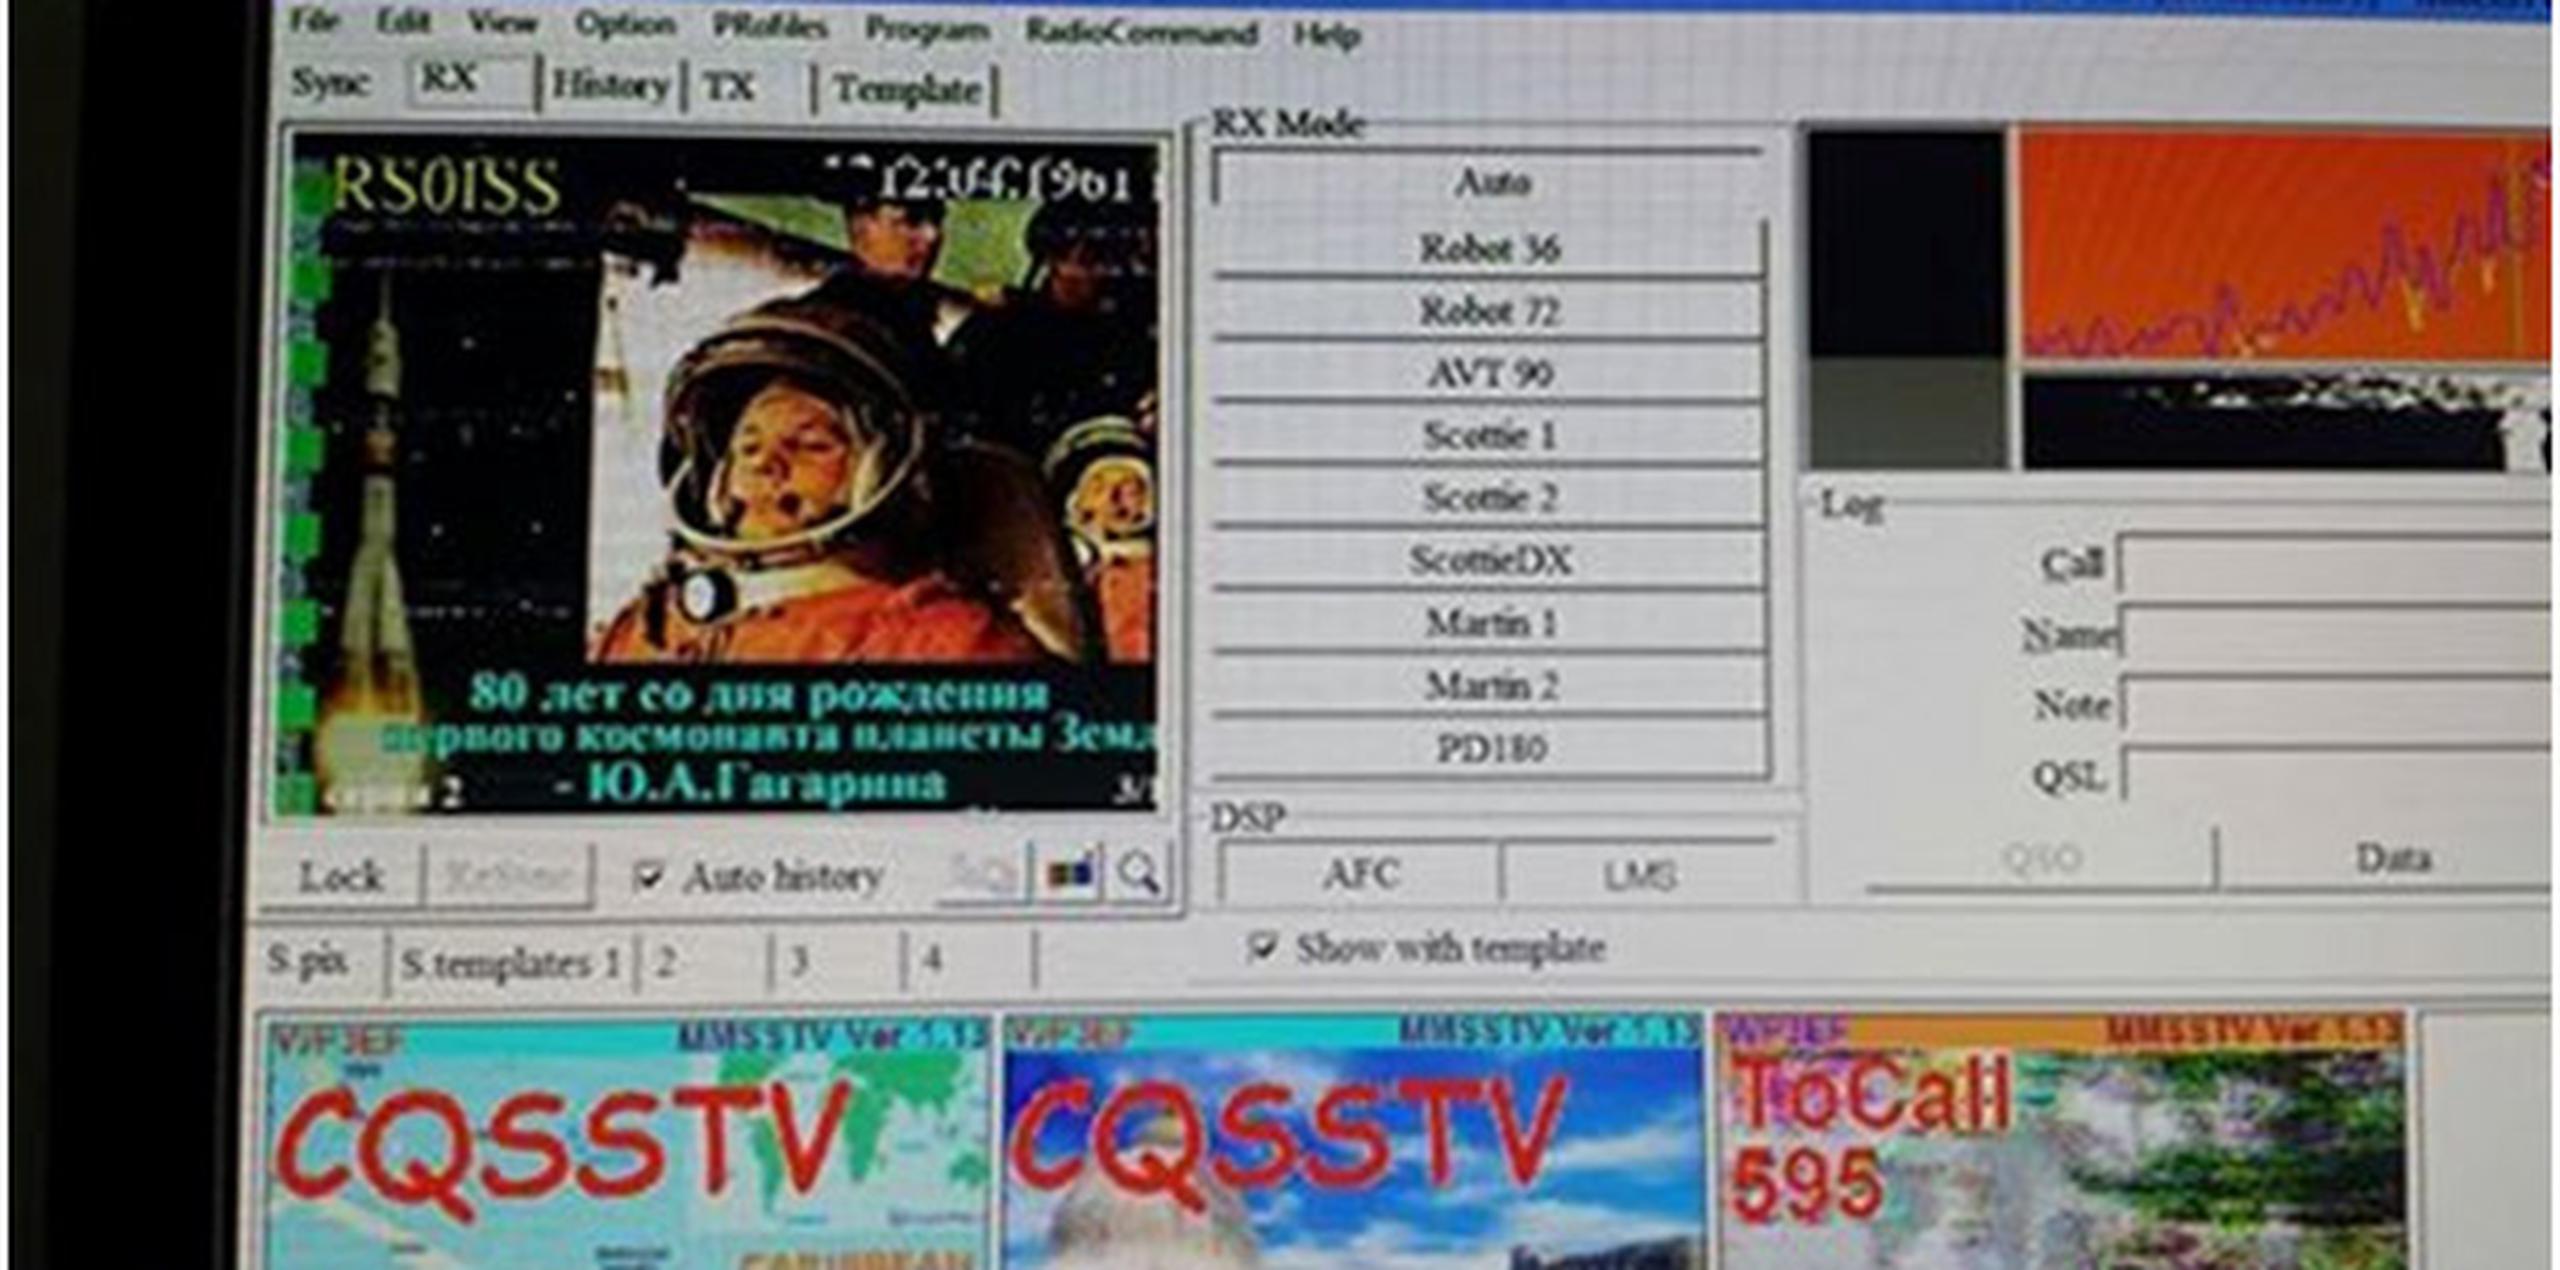 Imagen transmitida desde la Estación Espacial Internacional recibida con el programa MMSSTV por Eddie Figueroa, radioaficionado de Canóvanas el 1 de febrero de 2015. (Suministrada)